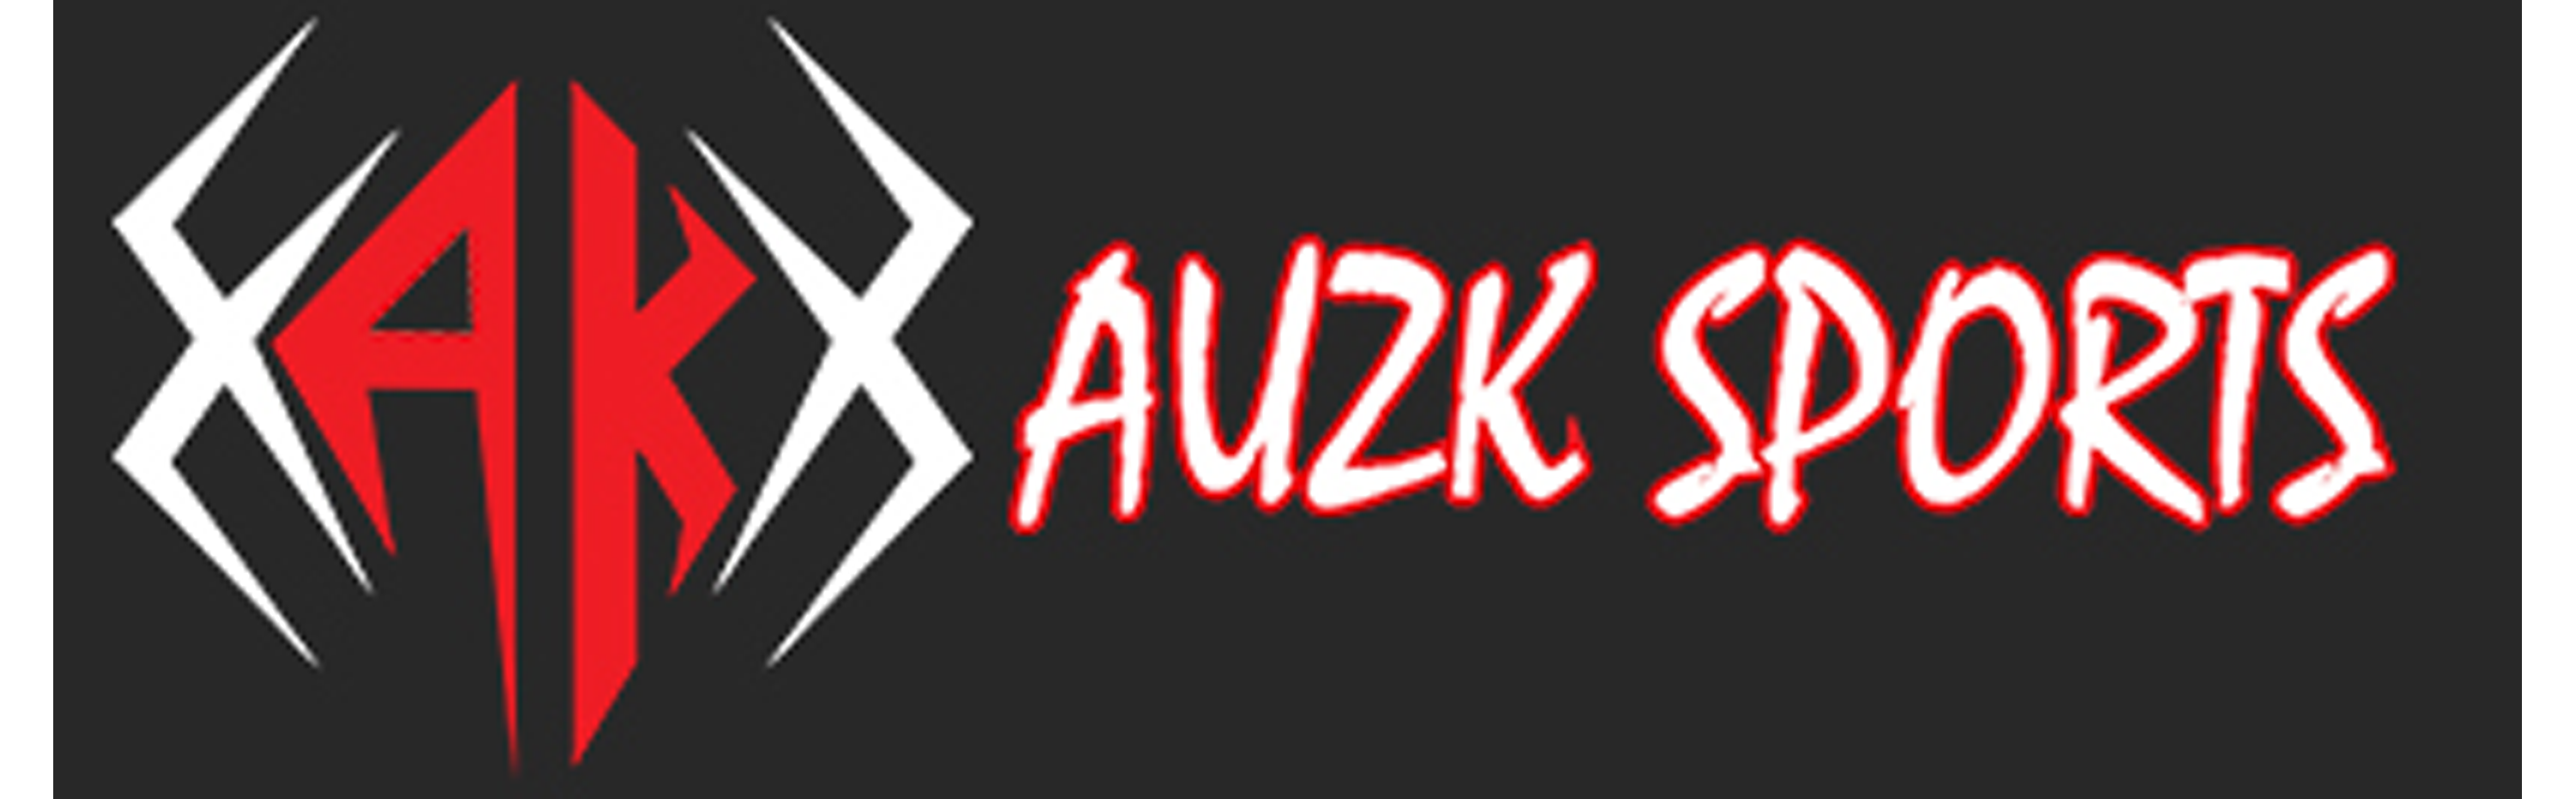 auzksports logo